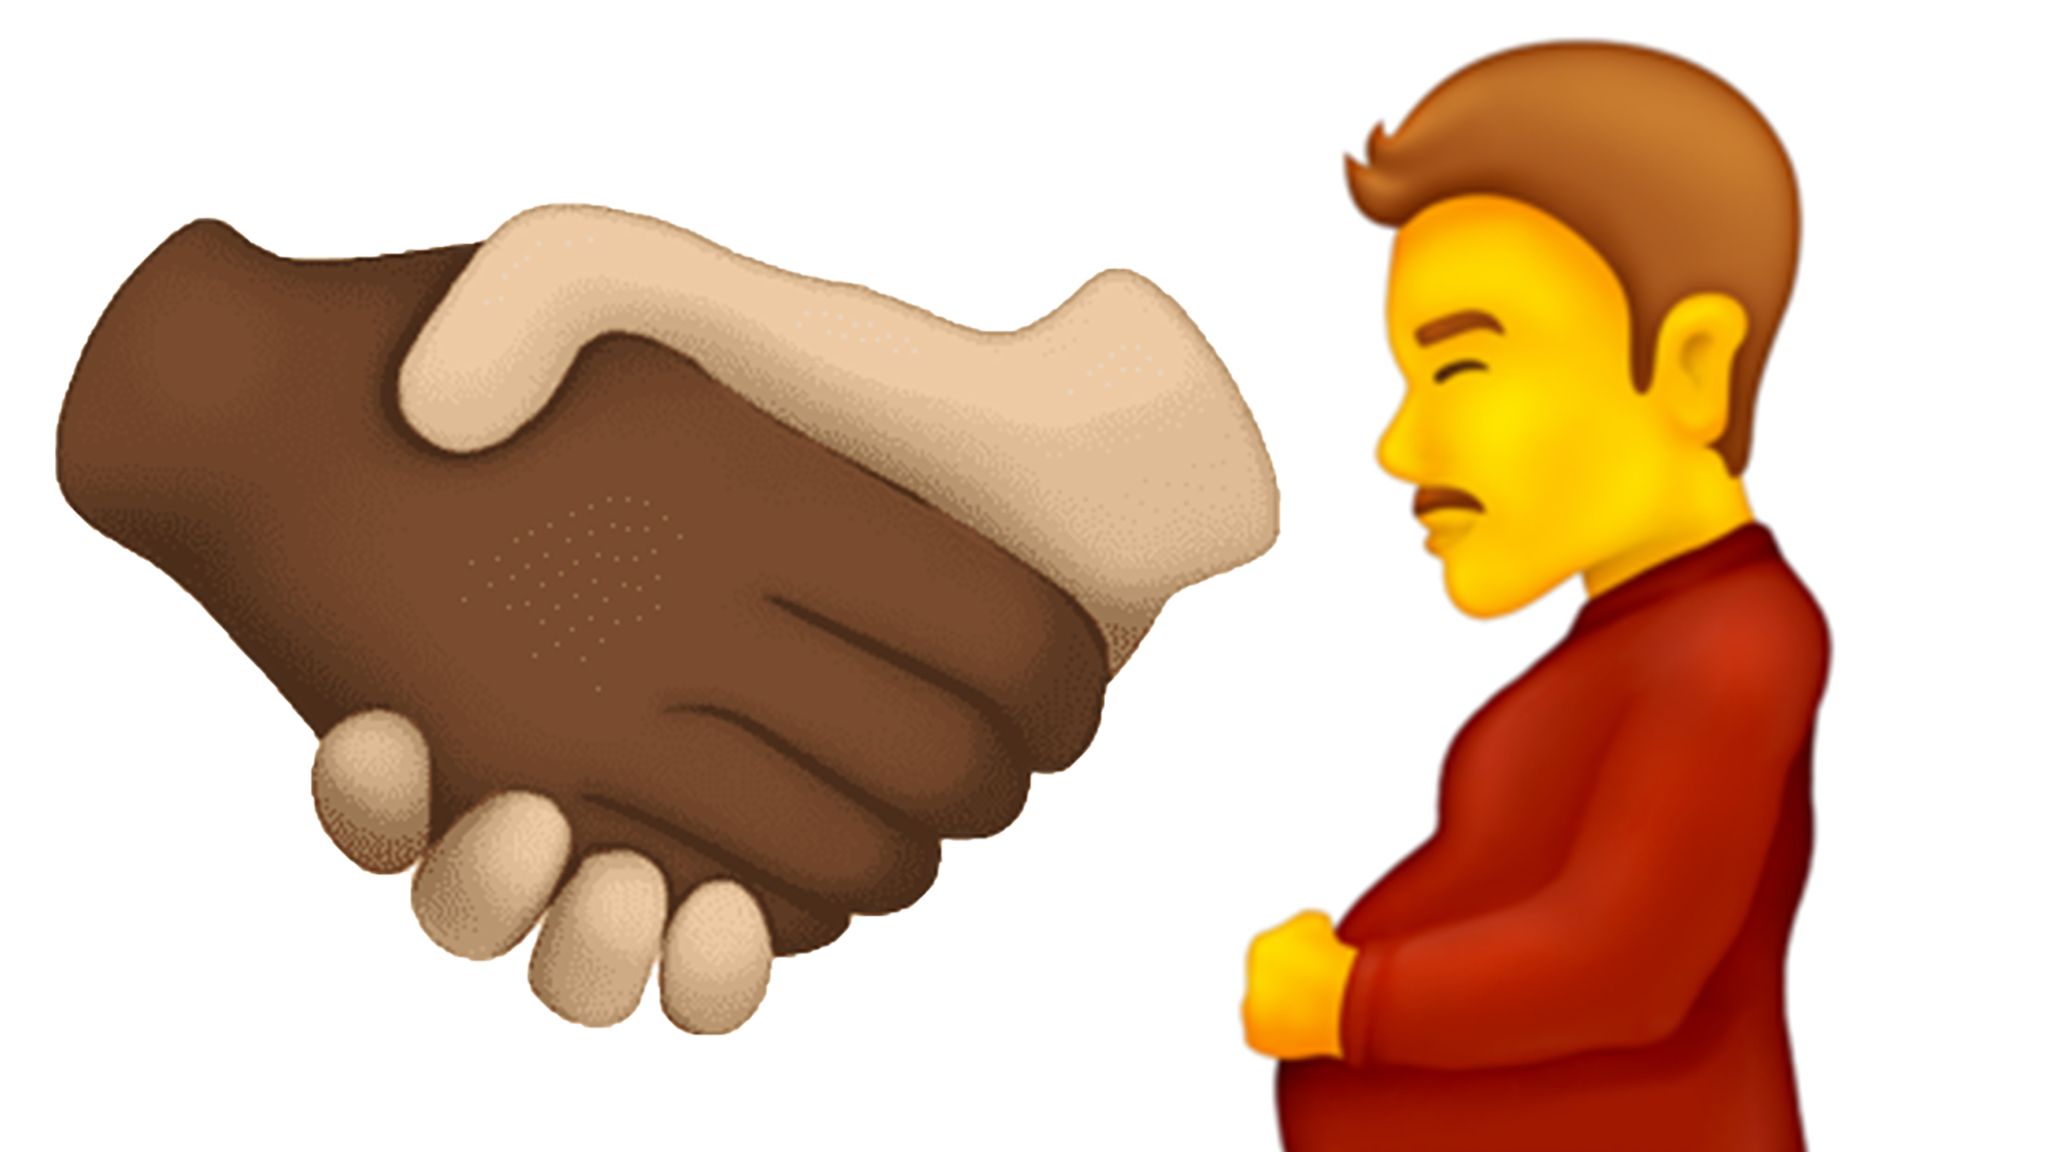 New multiracial handshake emojis YAAAASSSS I squeeled a bit when I